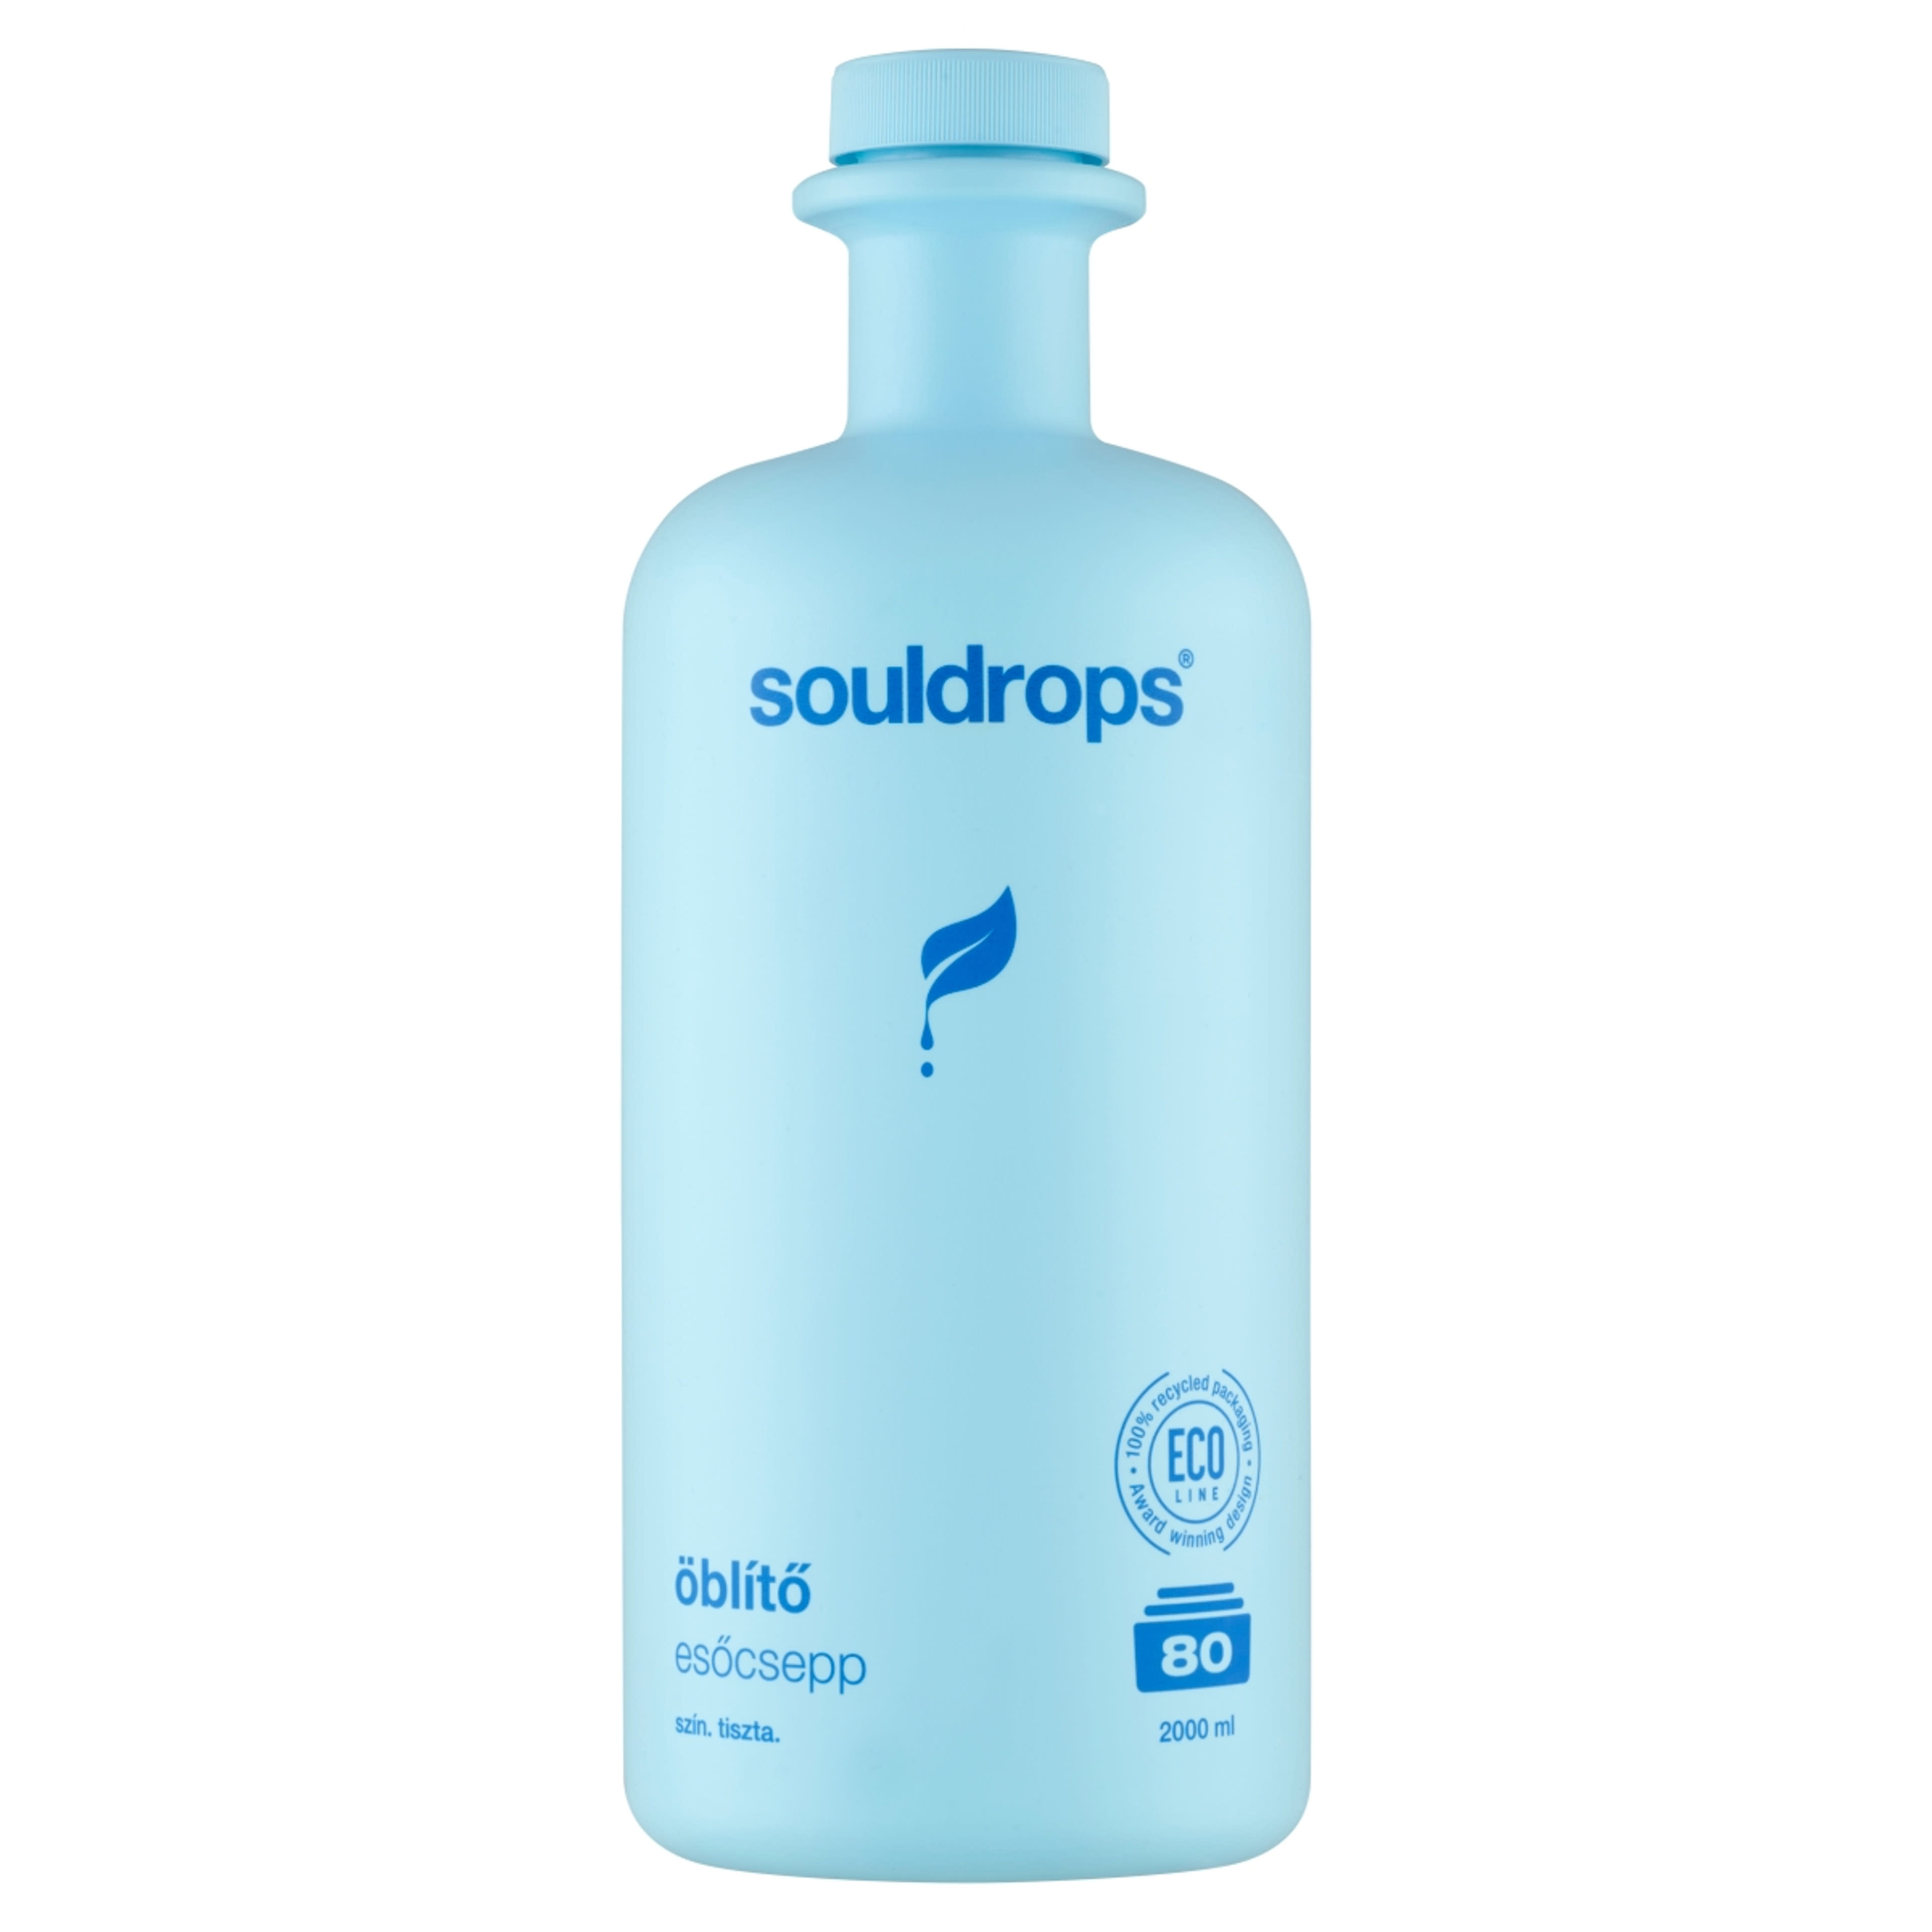 Soldorps Esőcsepp öblítő 80 mosás - 2000 ml